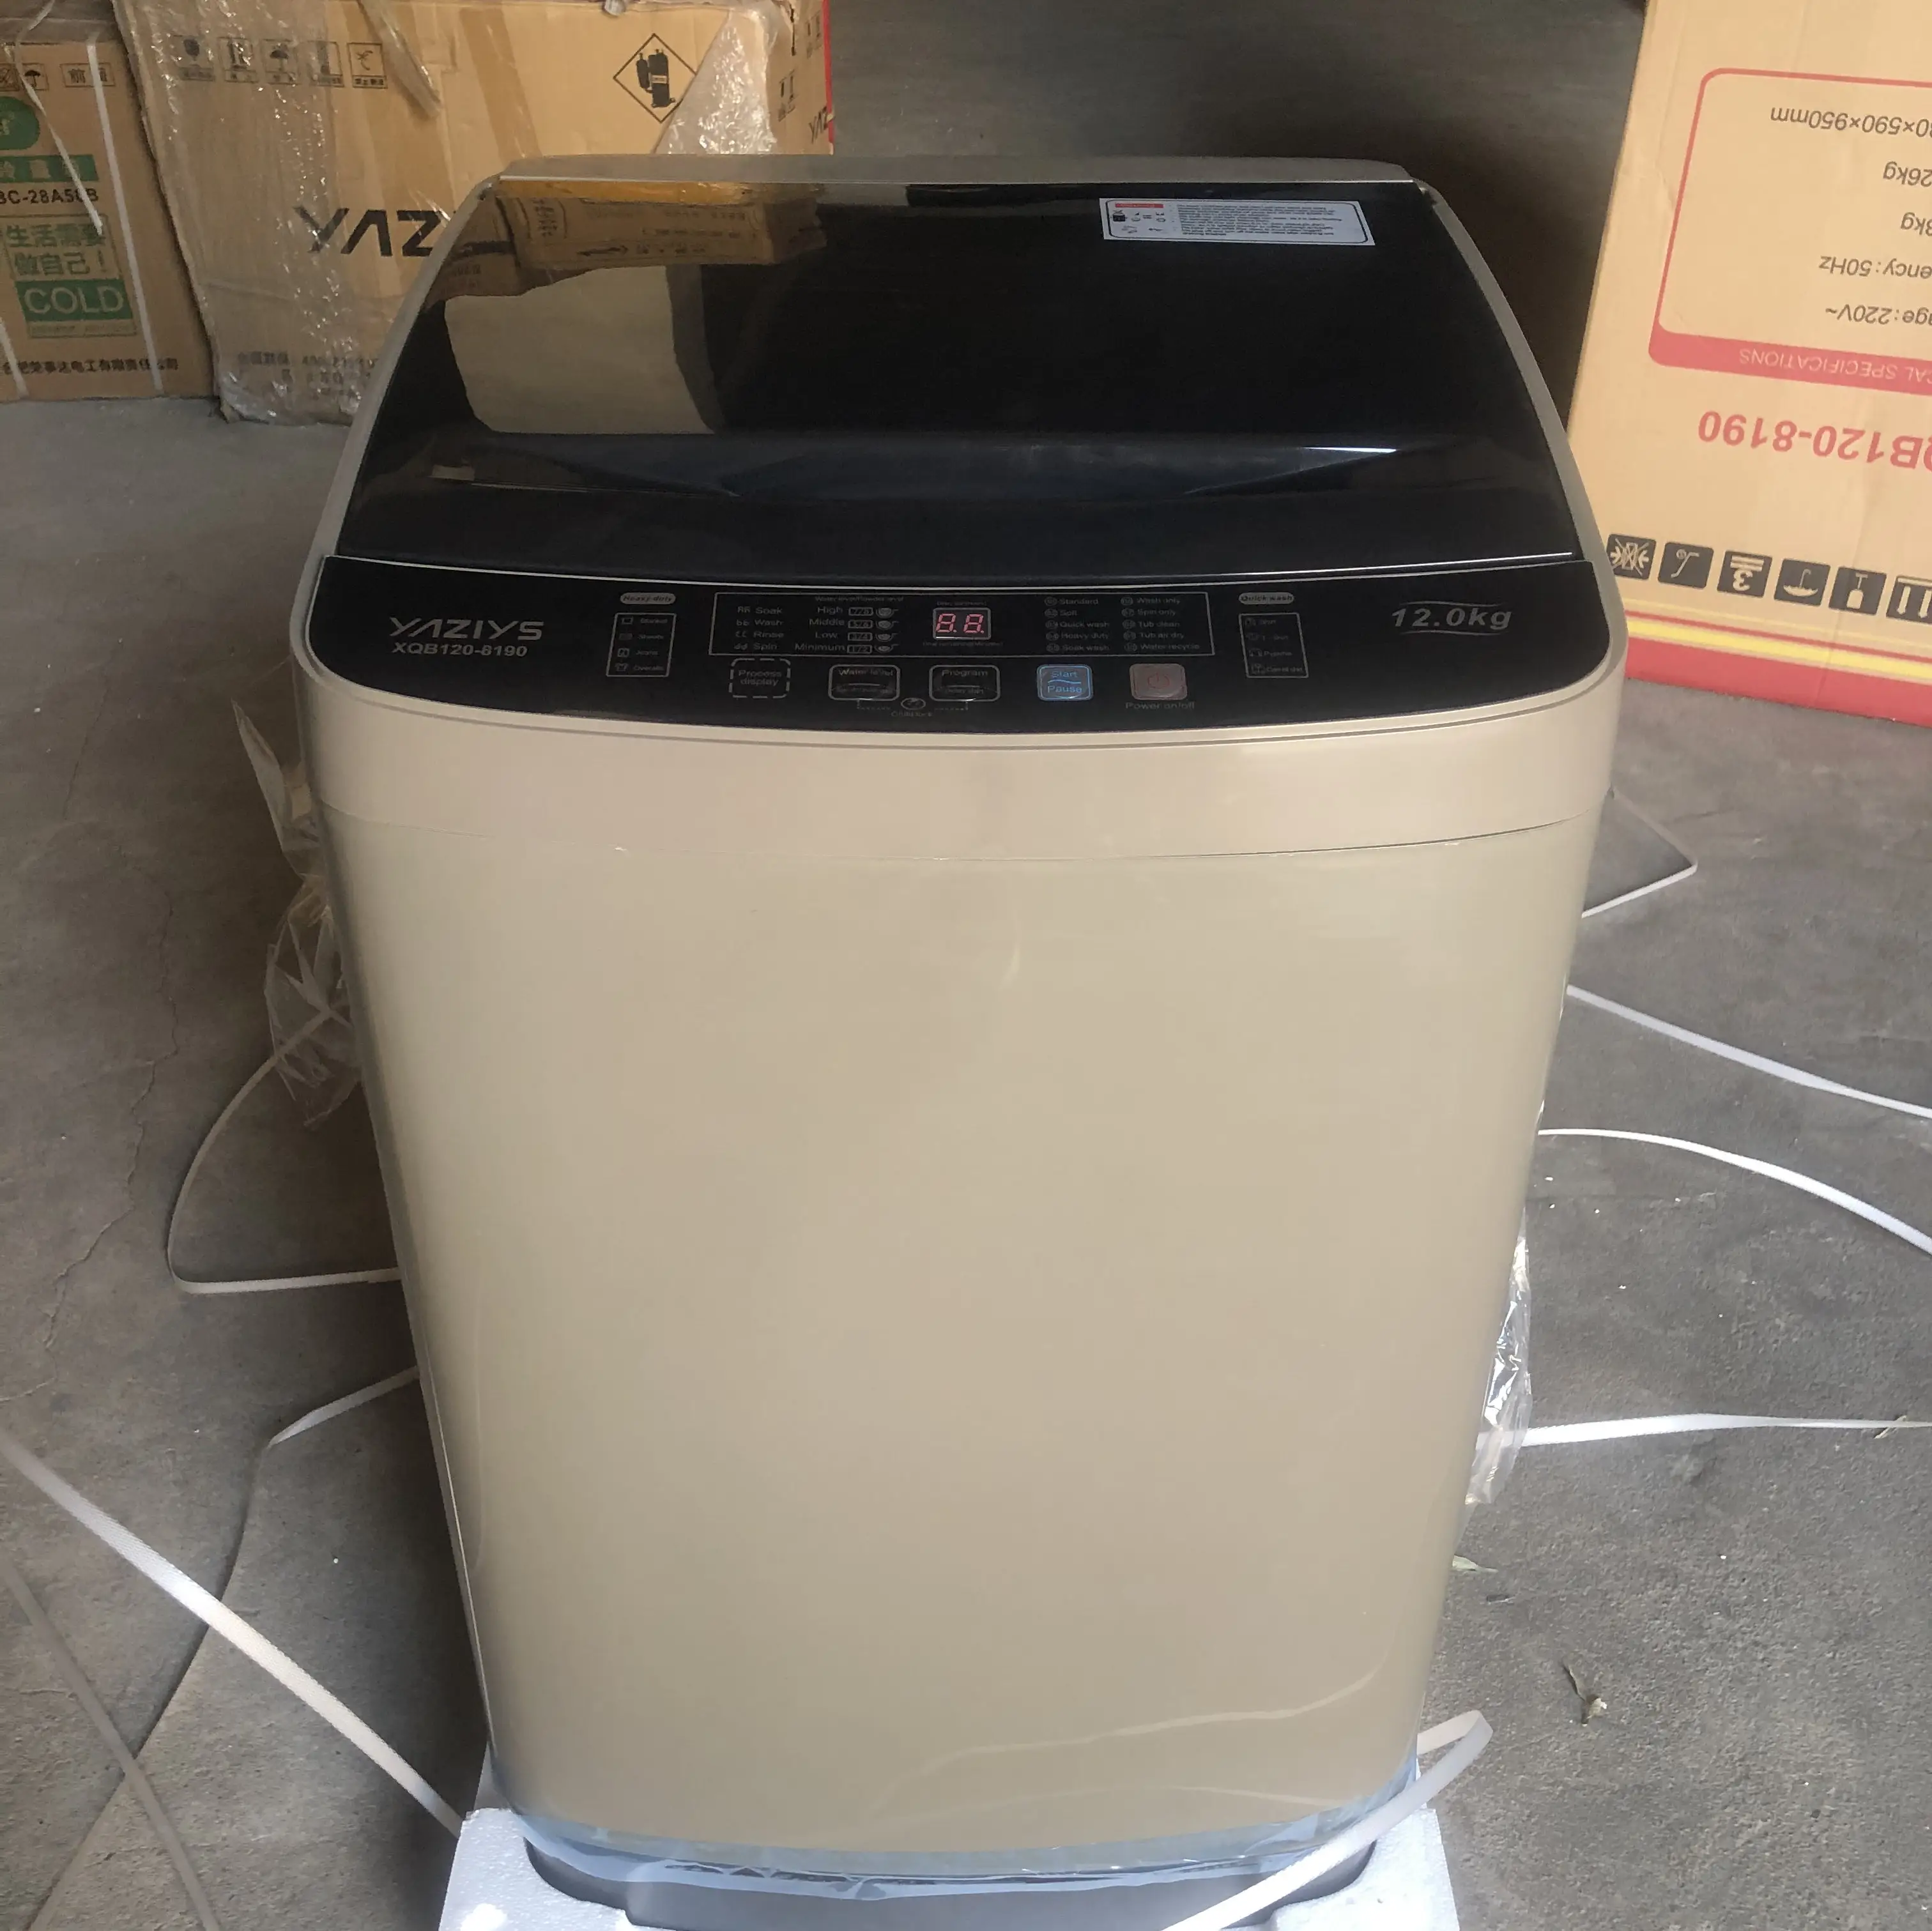 12kg 탑 로딩 자동 세탁기 가정용 싱글 배럴 세탁 장비 가전 제품 XQB120-8190